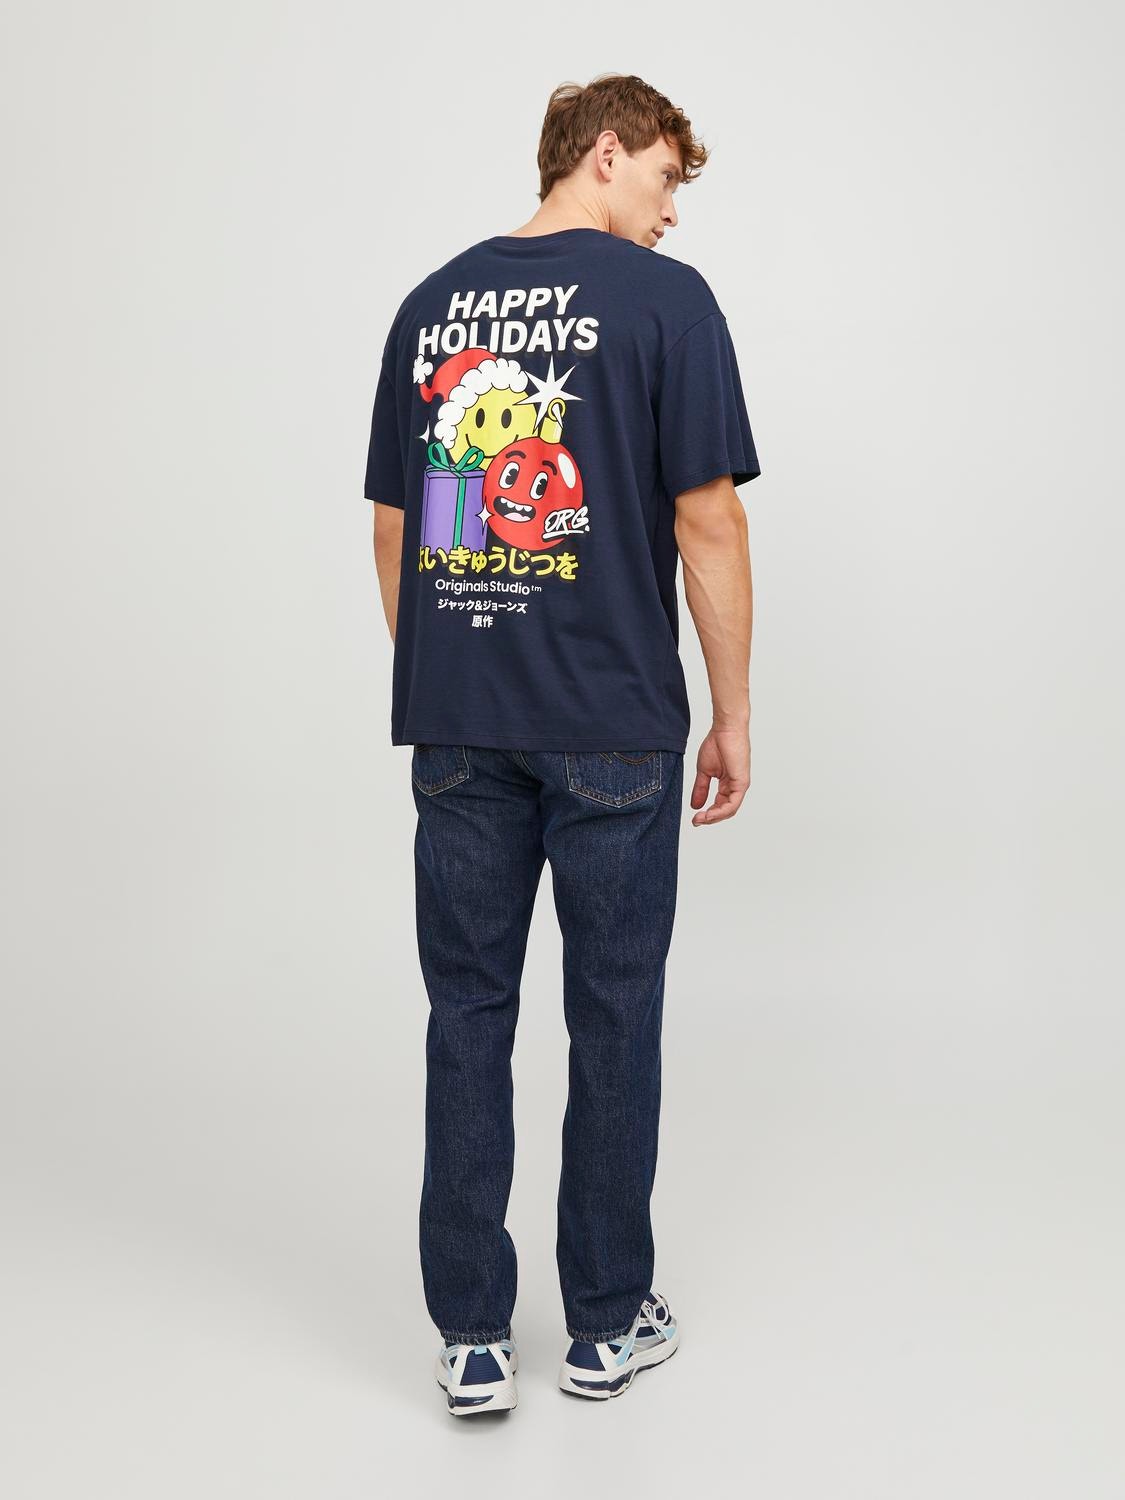 Jack & Jones X-mas O-hals T-skjorte -Sky Captain - 12247683